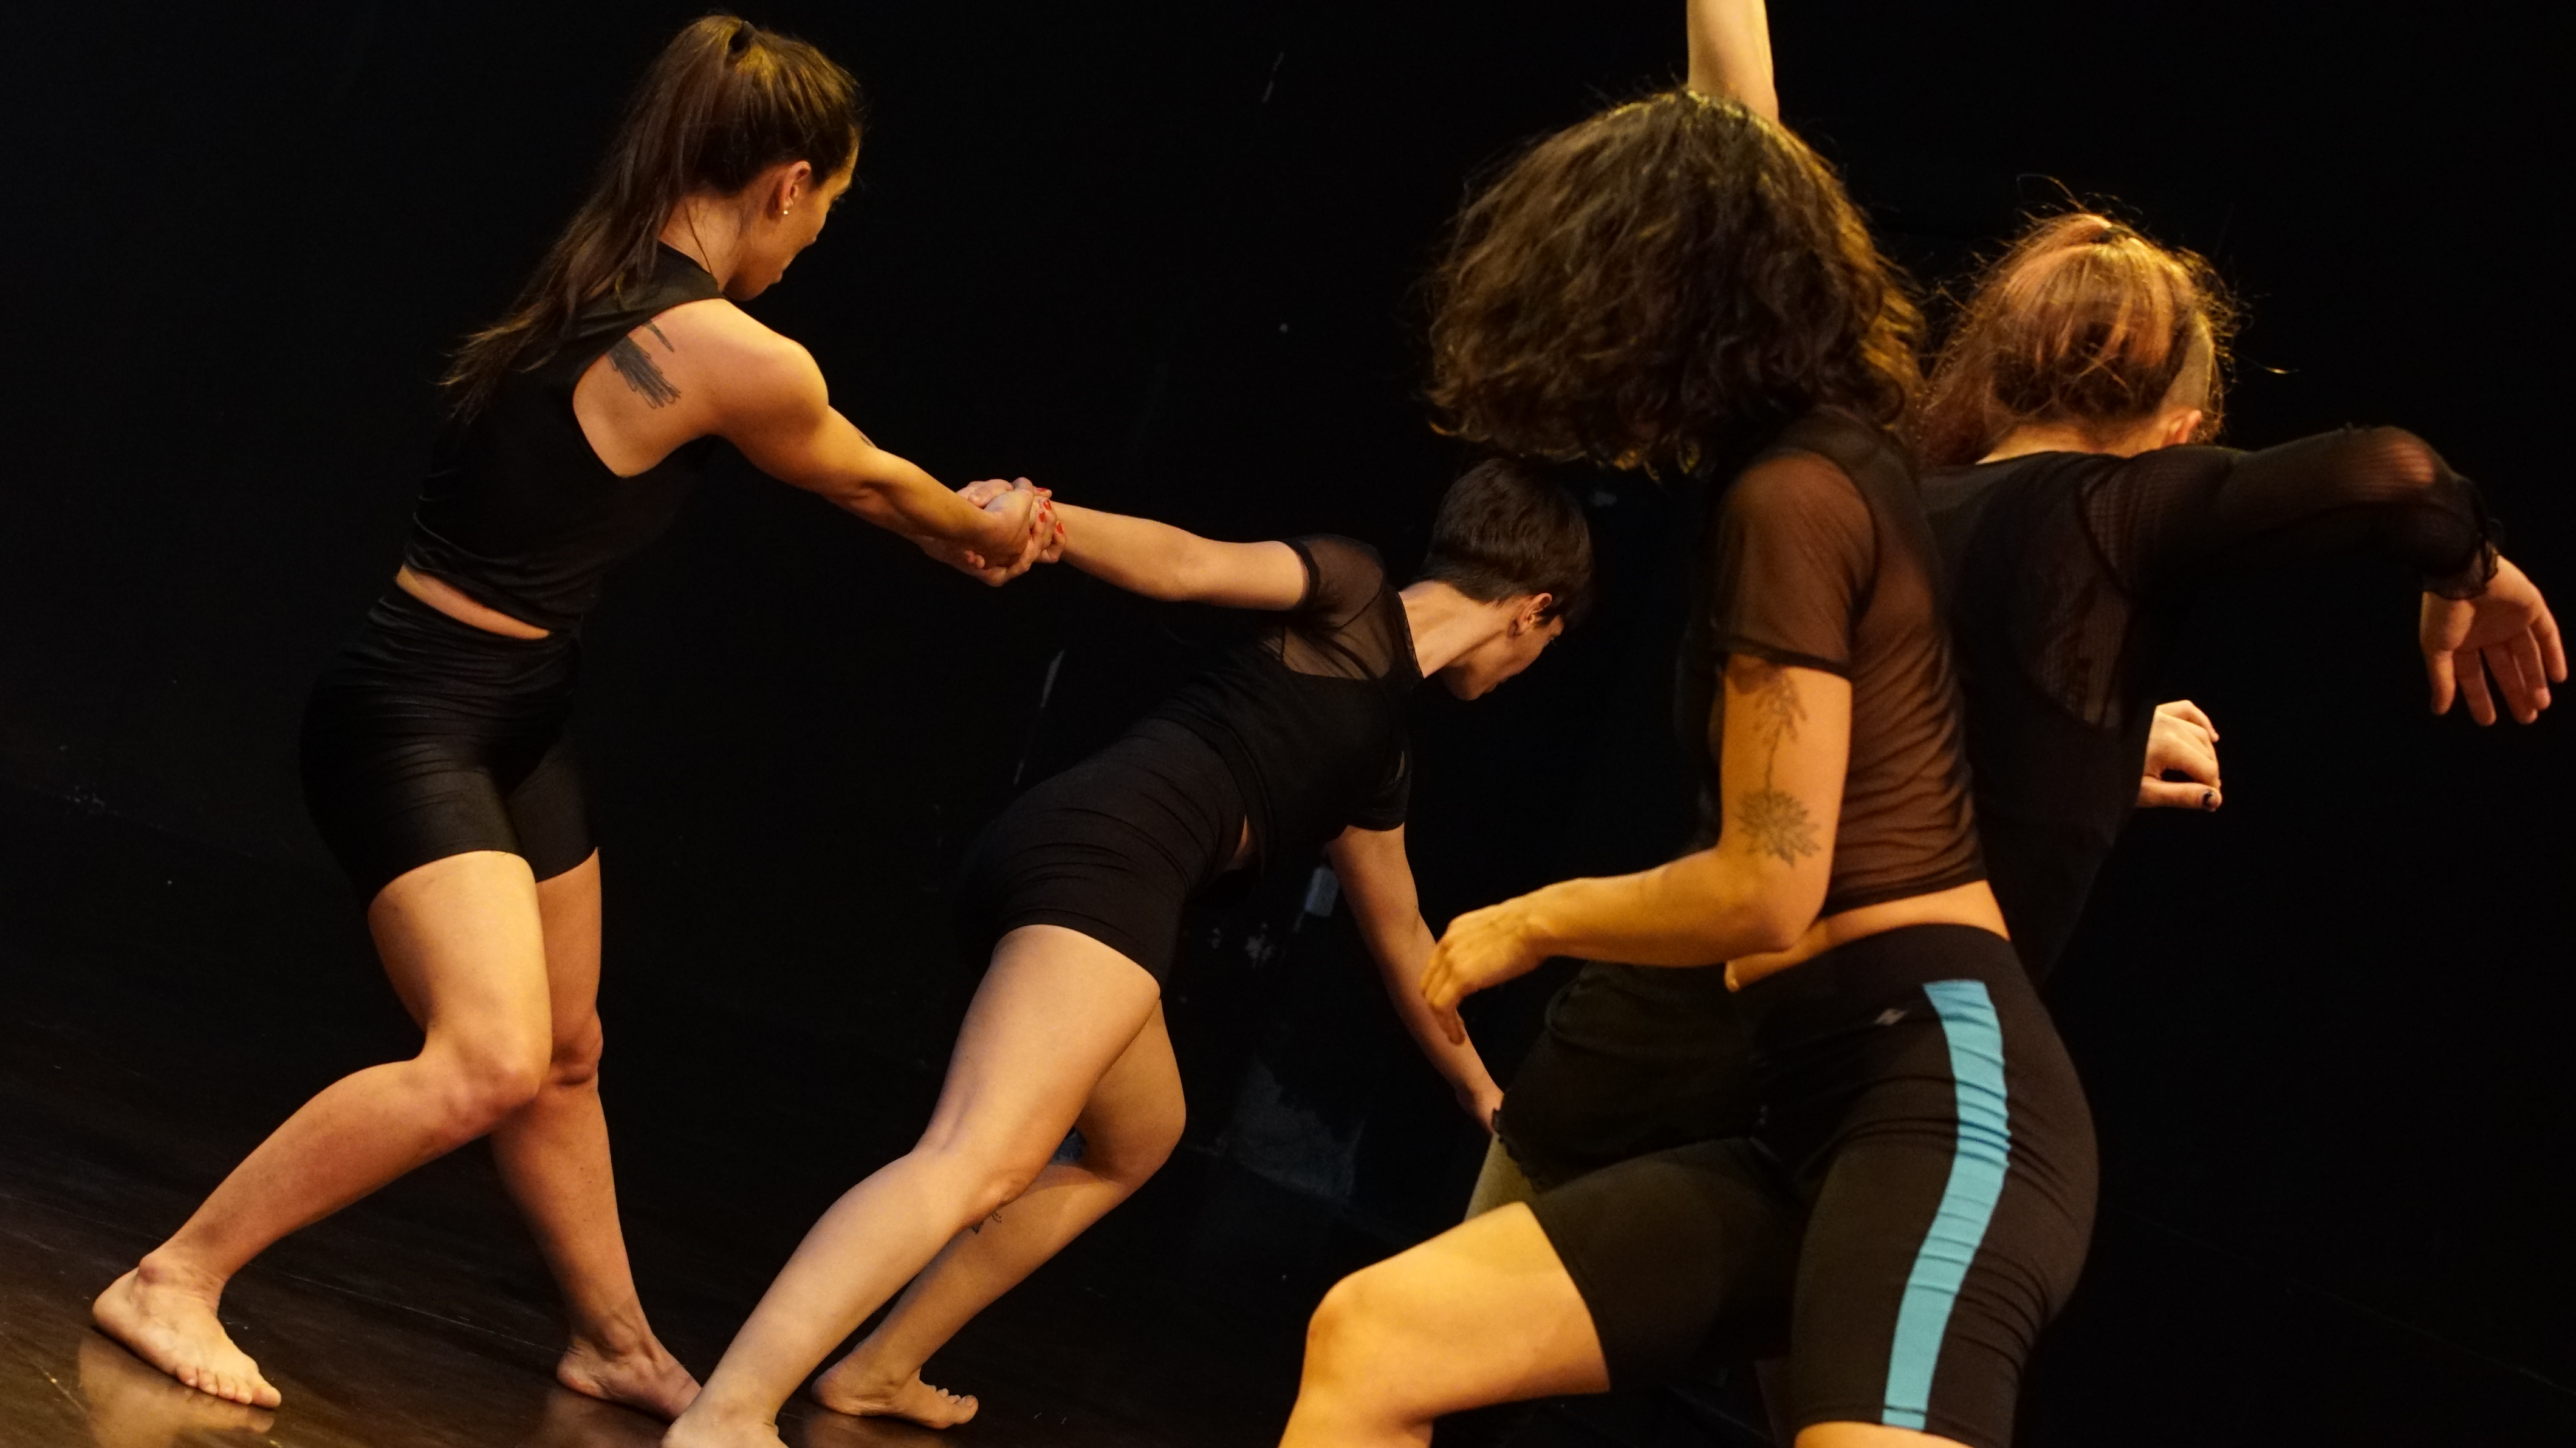 "Vibra", danza teatro del grupo neuquino Triada, arte en movimiento.